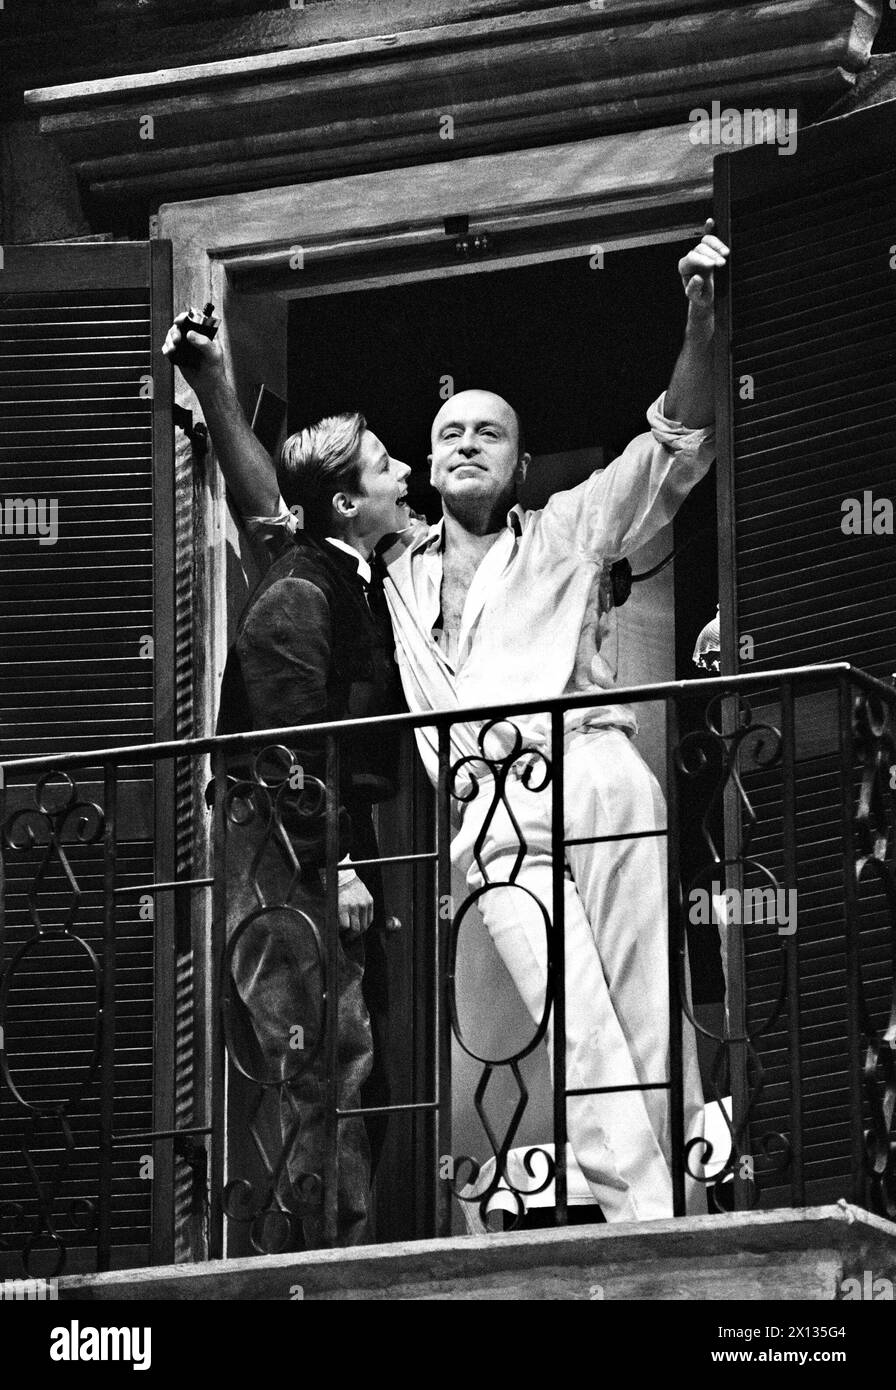 Vienna il 27 marzo 1990: Prova finale dell'opera teatrale di Lope de Vega "i cavalieri di Mirakel", messa in scena da Wilfried Baasner nel Volkstheater di Vienna. Nella foto: Margaretha Gartner nel ruolo di "Tristan" e Wilfried Baasner nel ruolo di "Lutzmann". - 19900327 PD0004 - Rechteinfo: Diritti gestiti (RM) Foto Stock